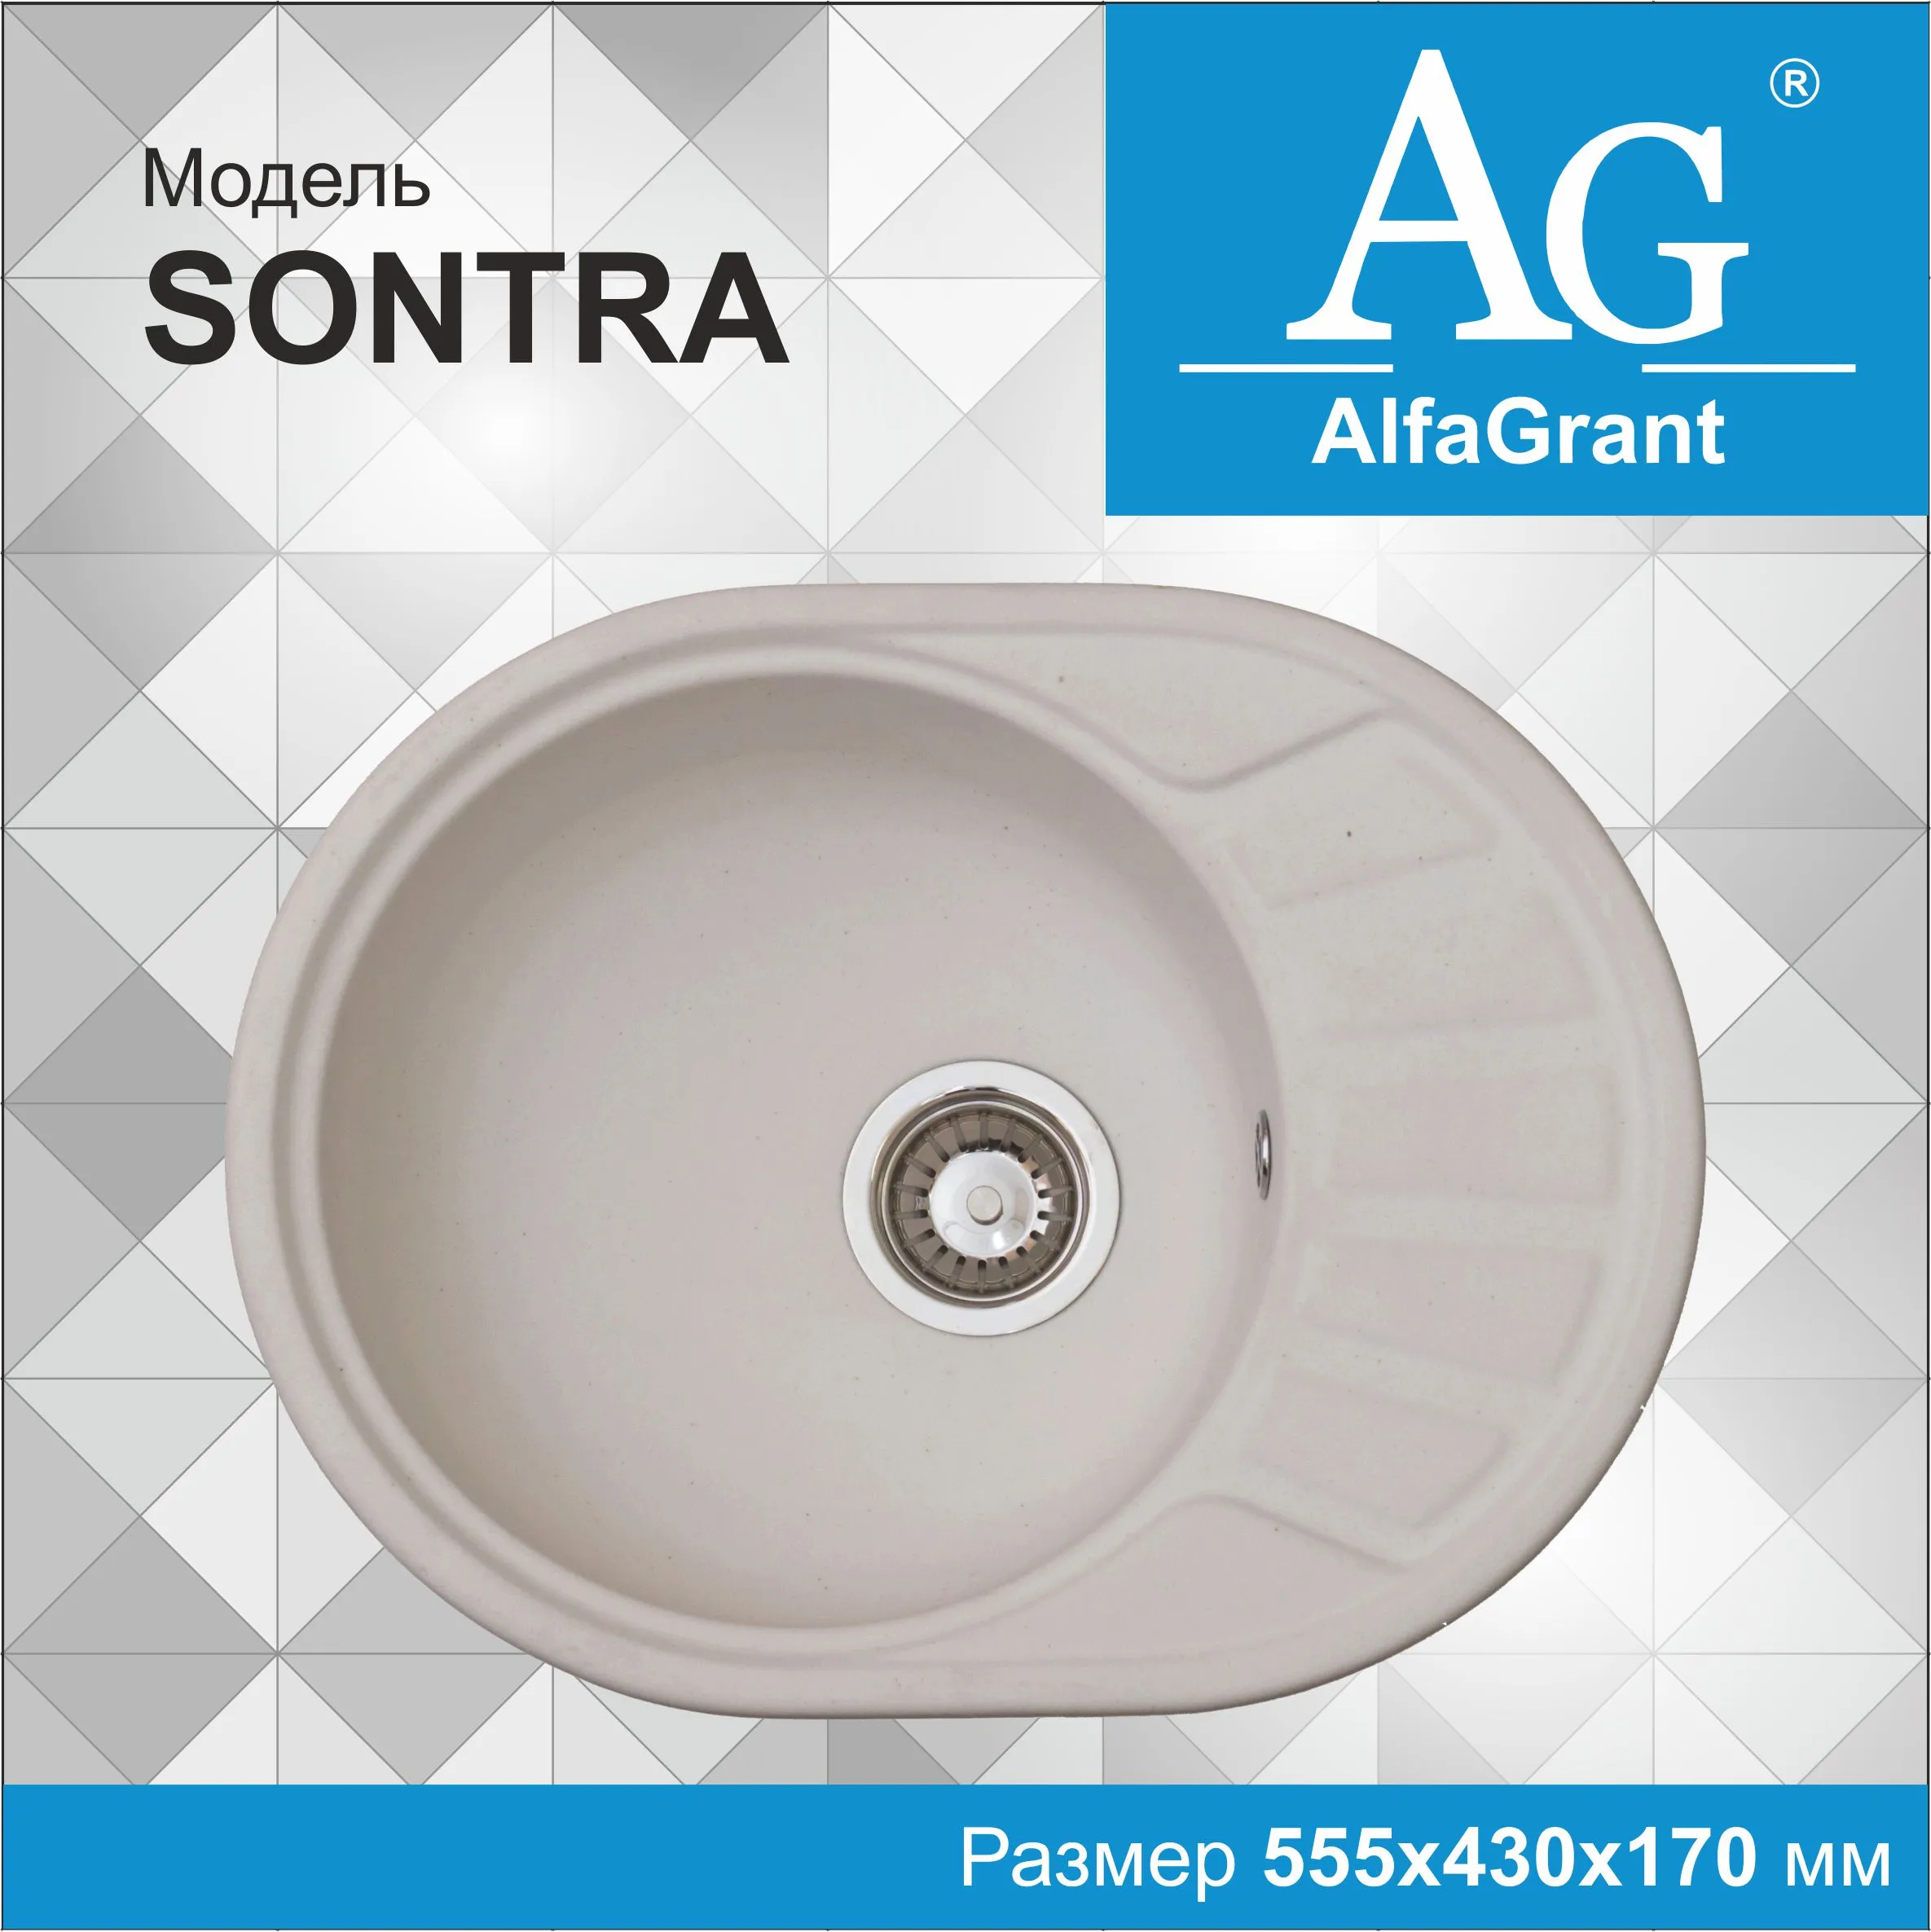 Кухонная мойка AlfaGrant модель SONTRA (AG-003).#1